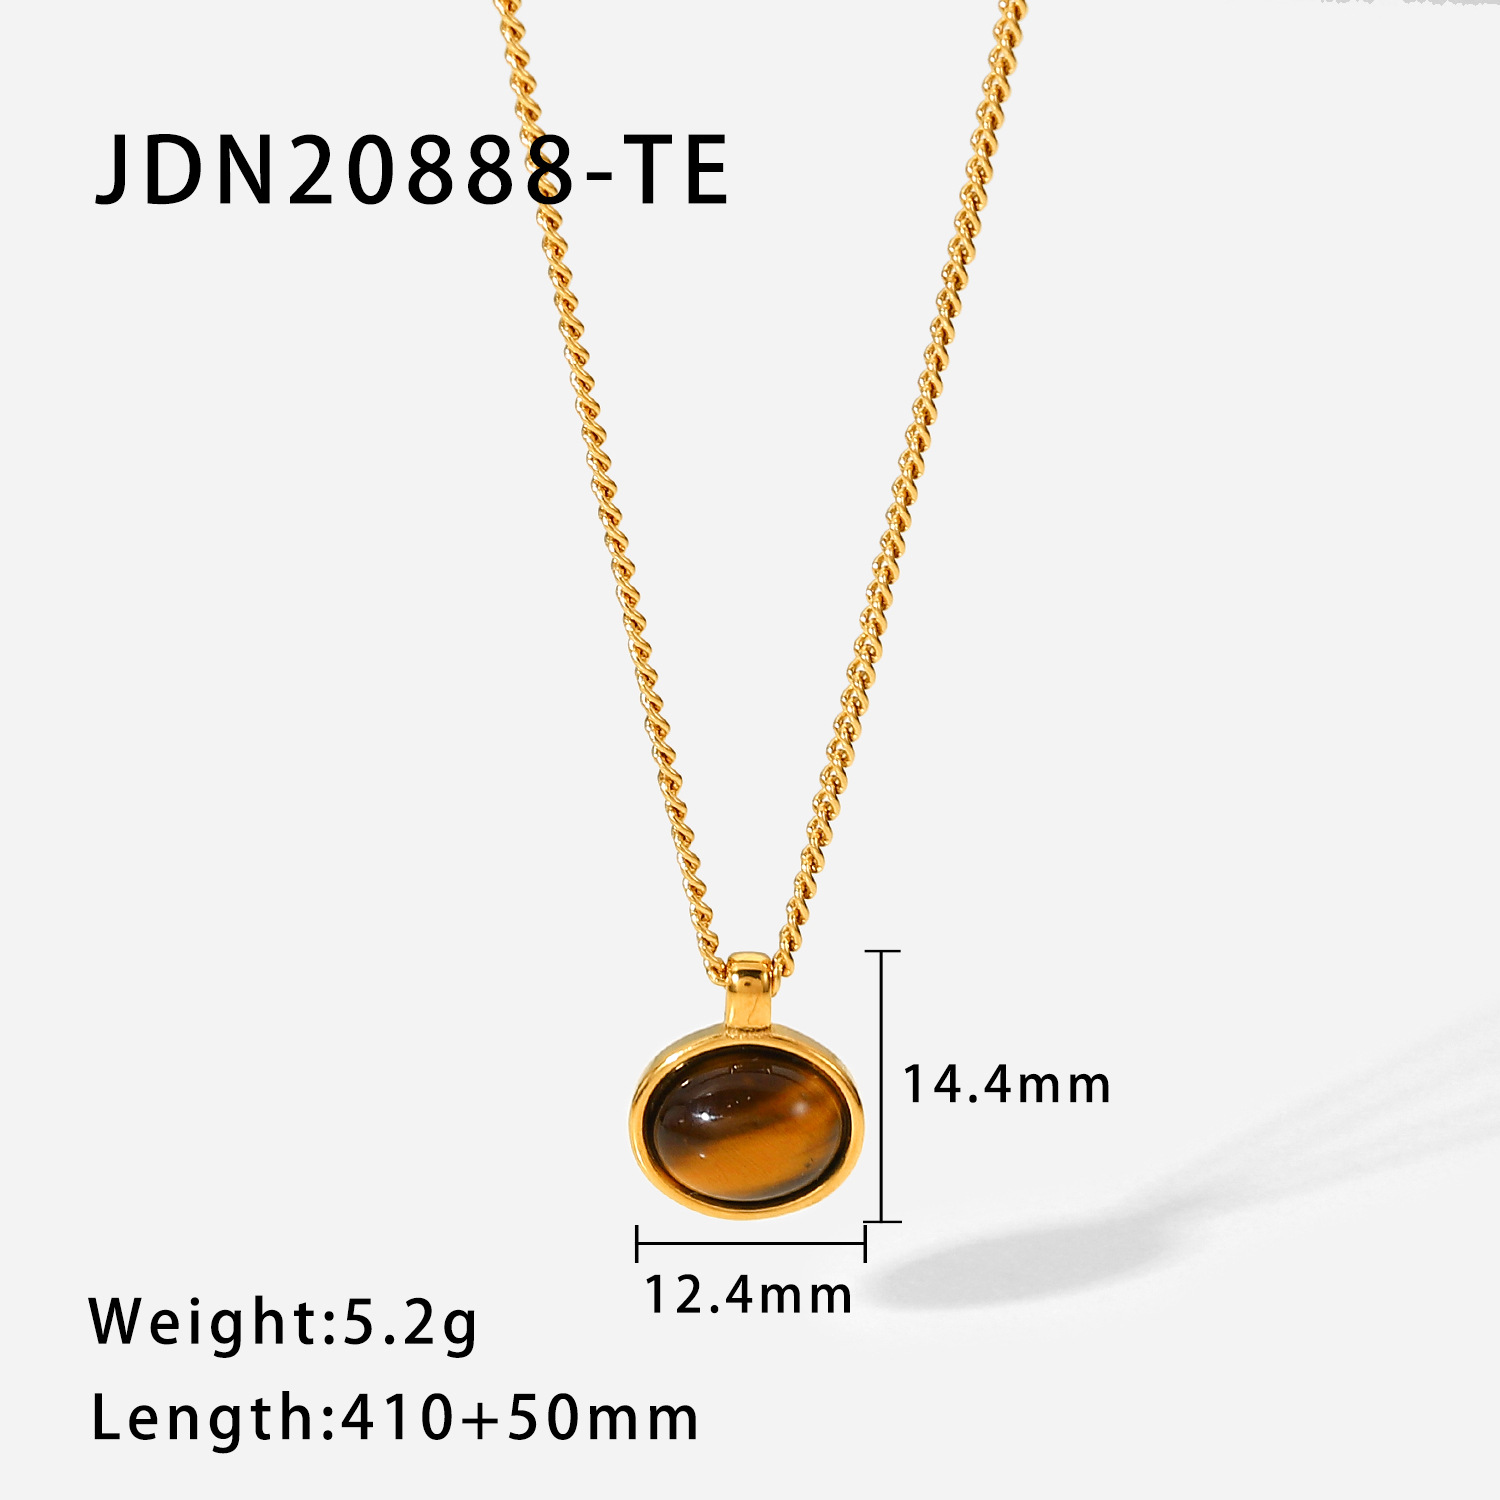 3:JDN20888-TE